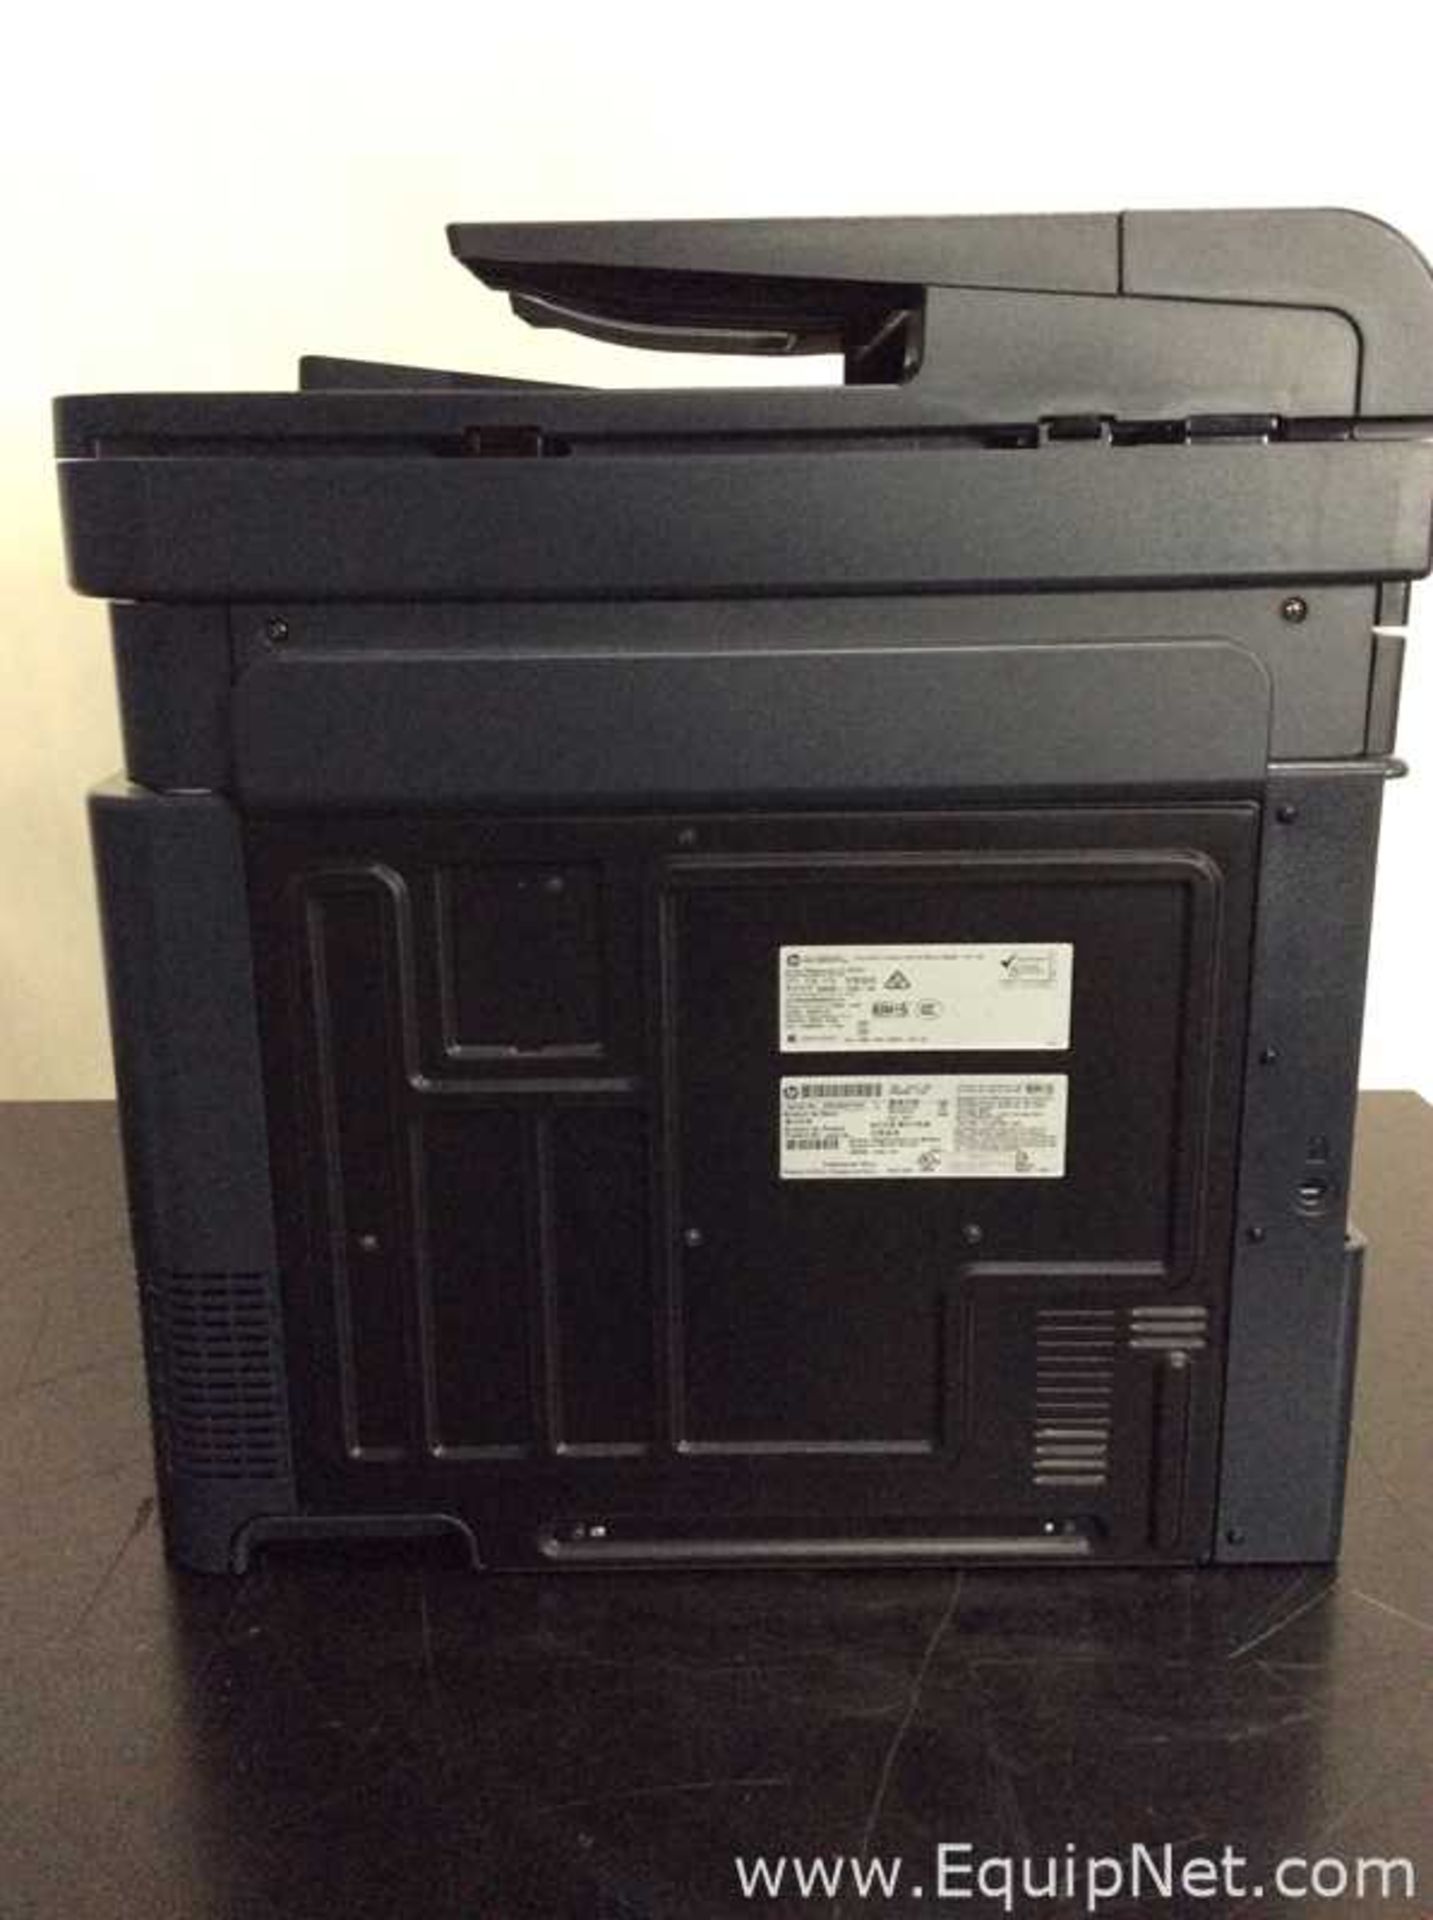 Hewlett Packard CZ271A Laserjet Pro 500 Printer - Image 5 of 6